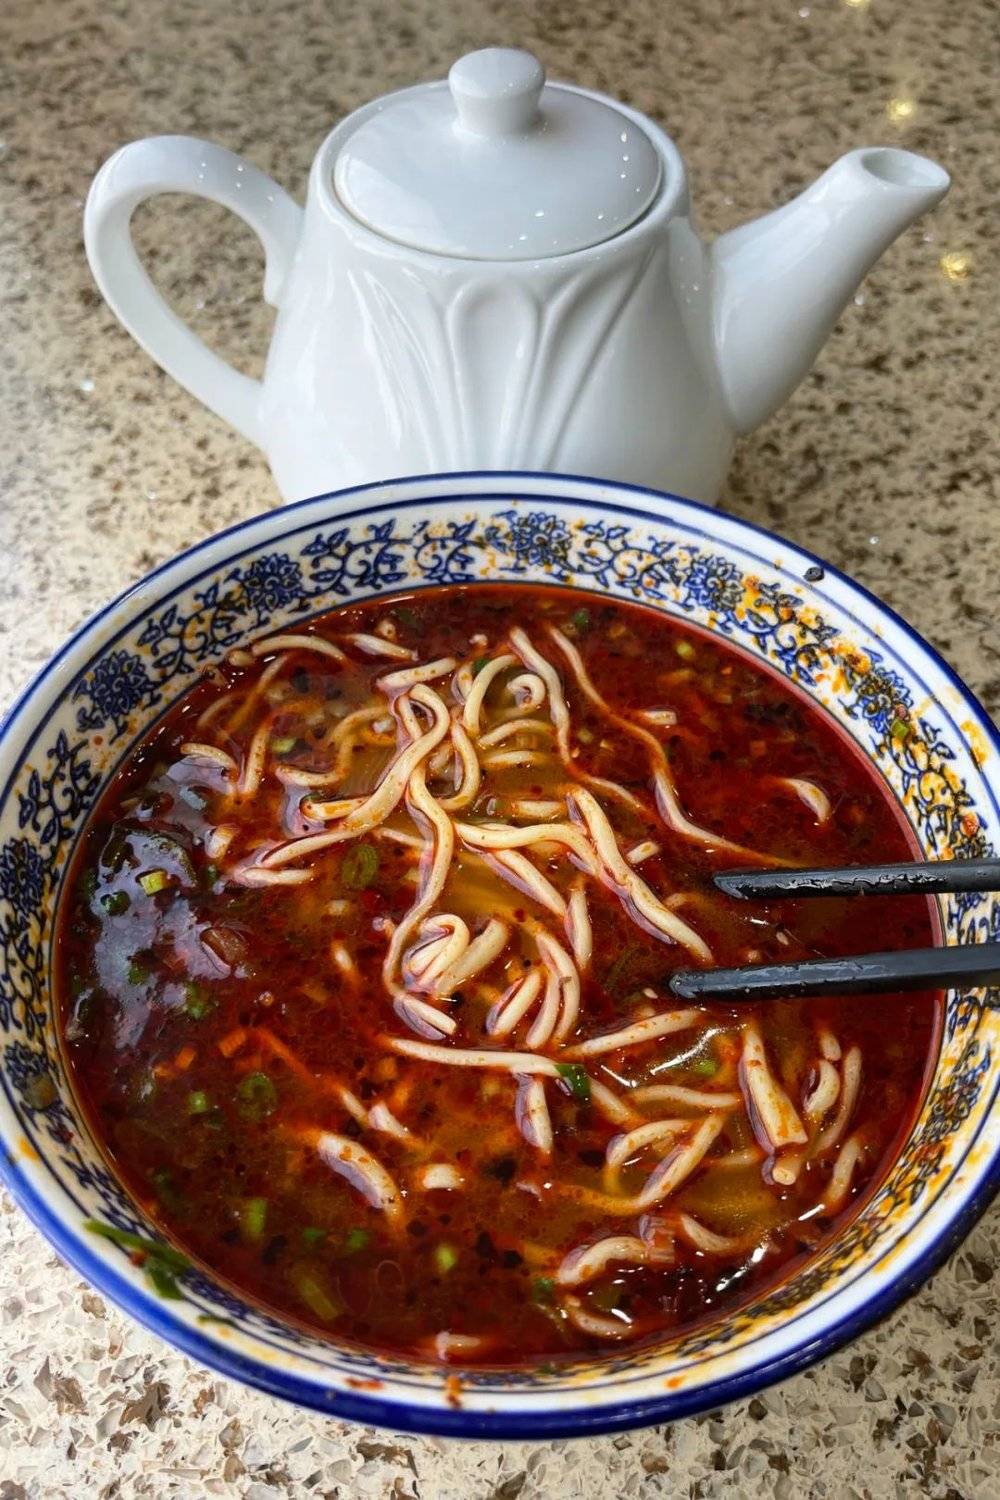 兰州人喜欢吃完面再放醋，因为好汤是会发生化学反应的，汤会是甜的，不酸。摄影/砍柴书生